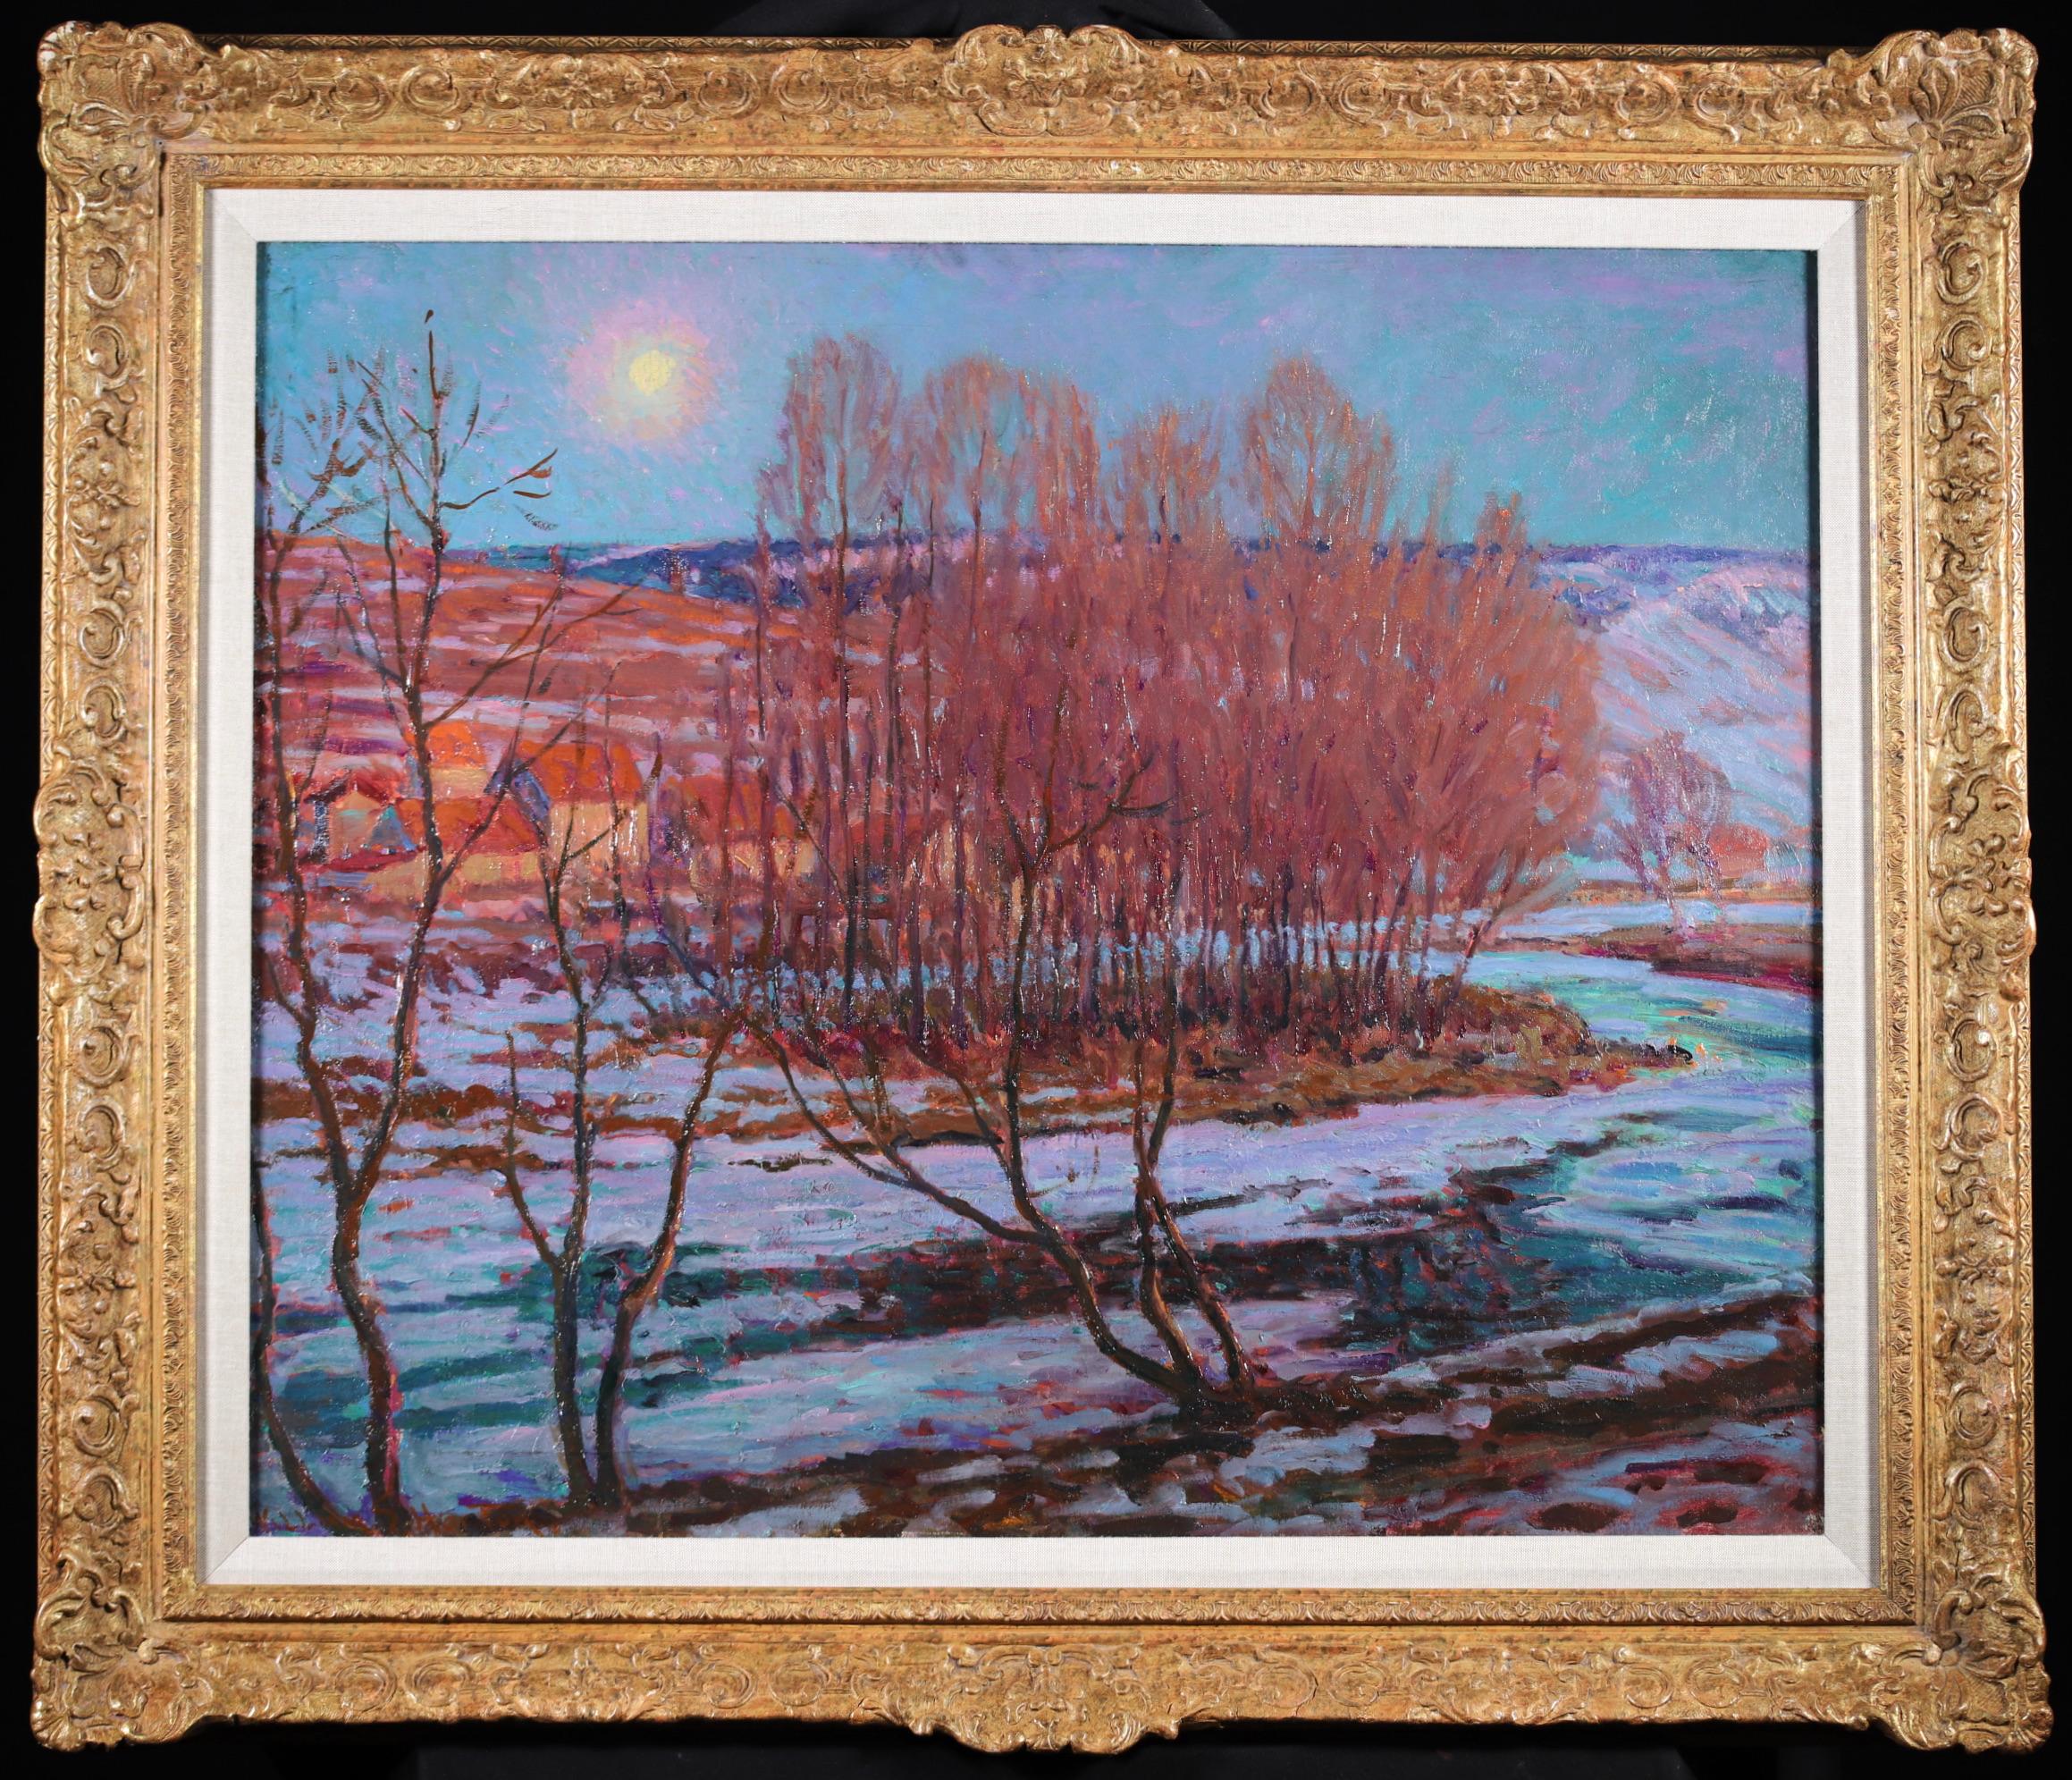 Paysage signé à l'huile sur toile du peintre impressionniste américain William Samuel Horton. L'œuvre représente une vue nocturne de Pontarlier, une commune de l'est de la France située près de la frontière suisse. Les bâtiments de Townes sont